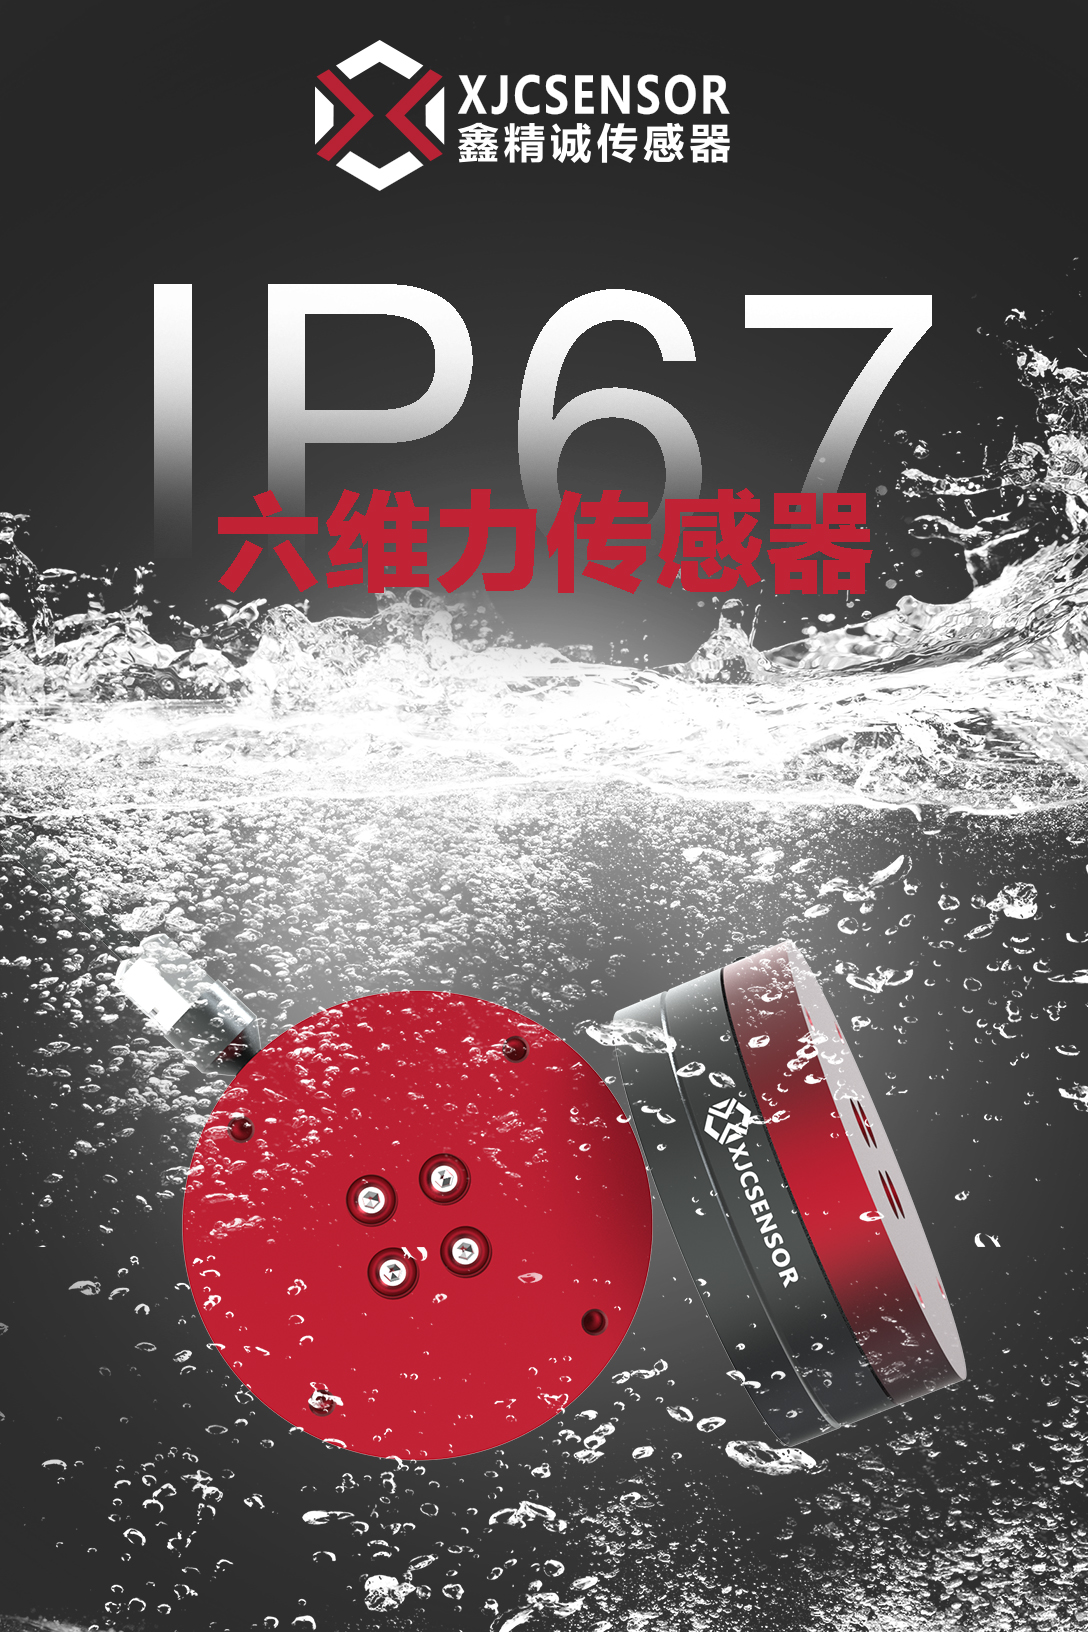  新品上市 | IP67级防水六维力传感器